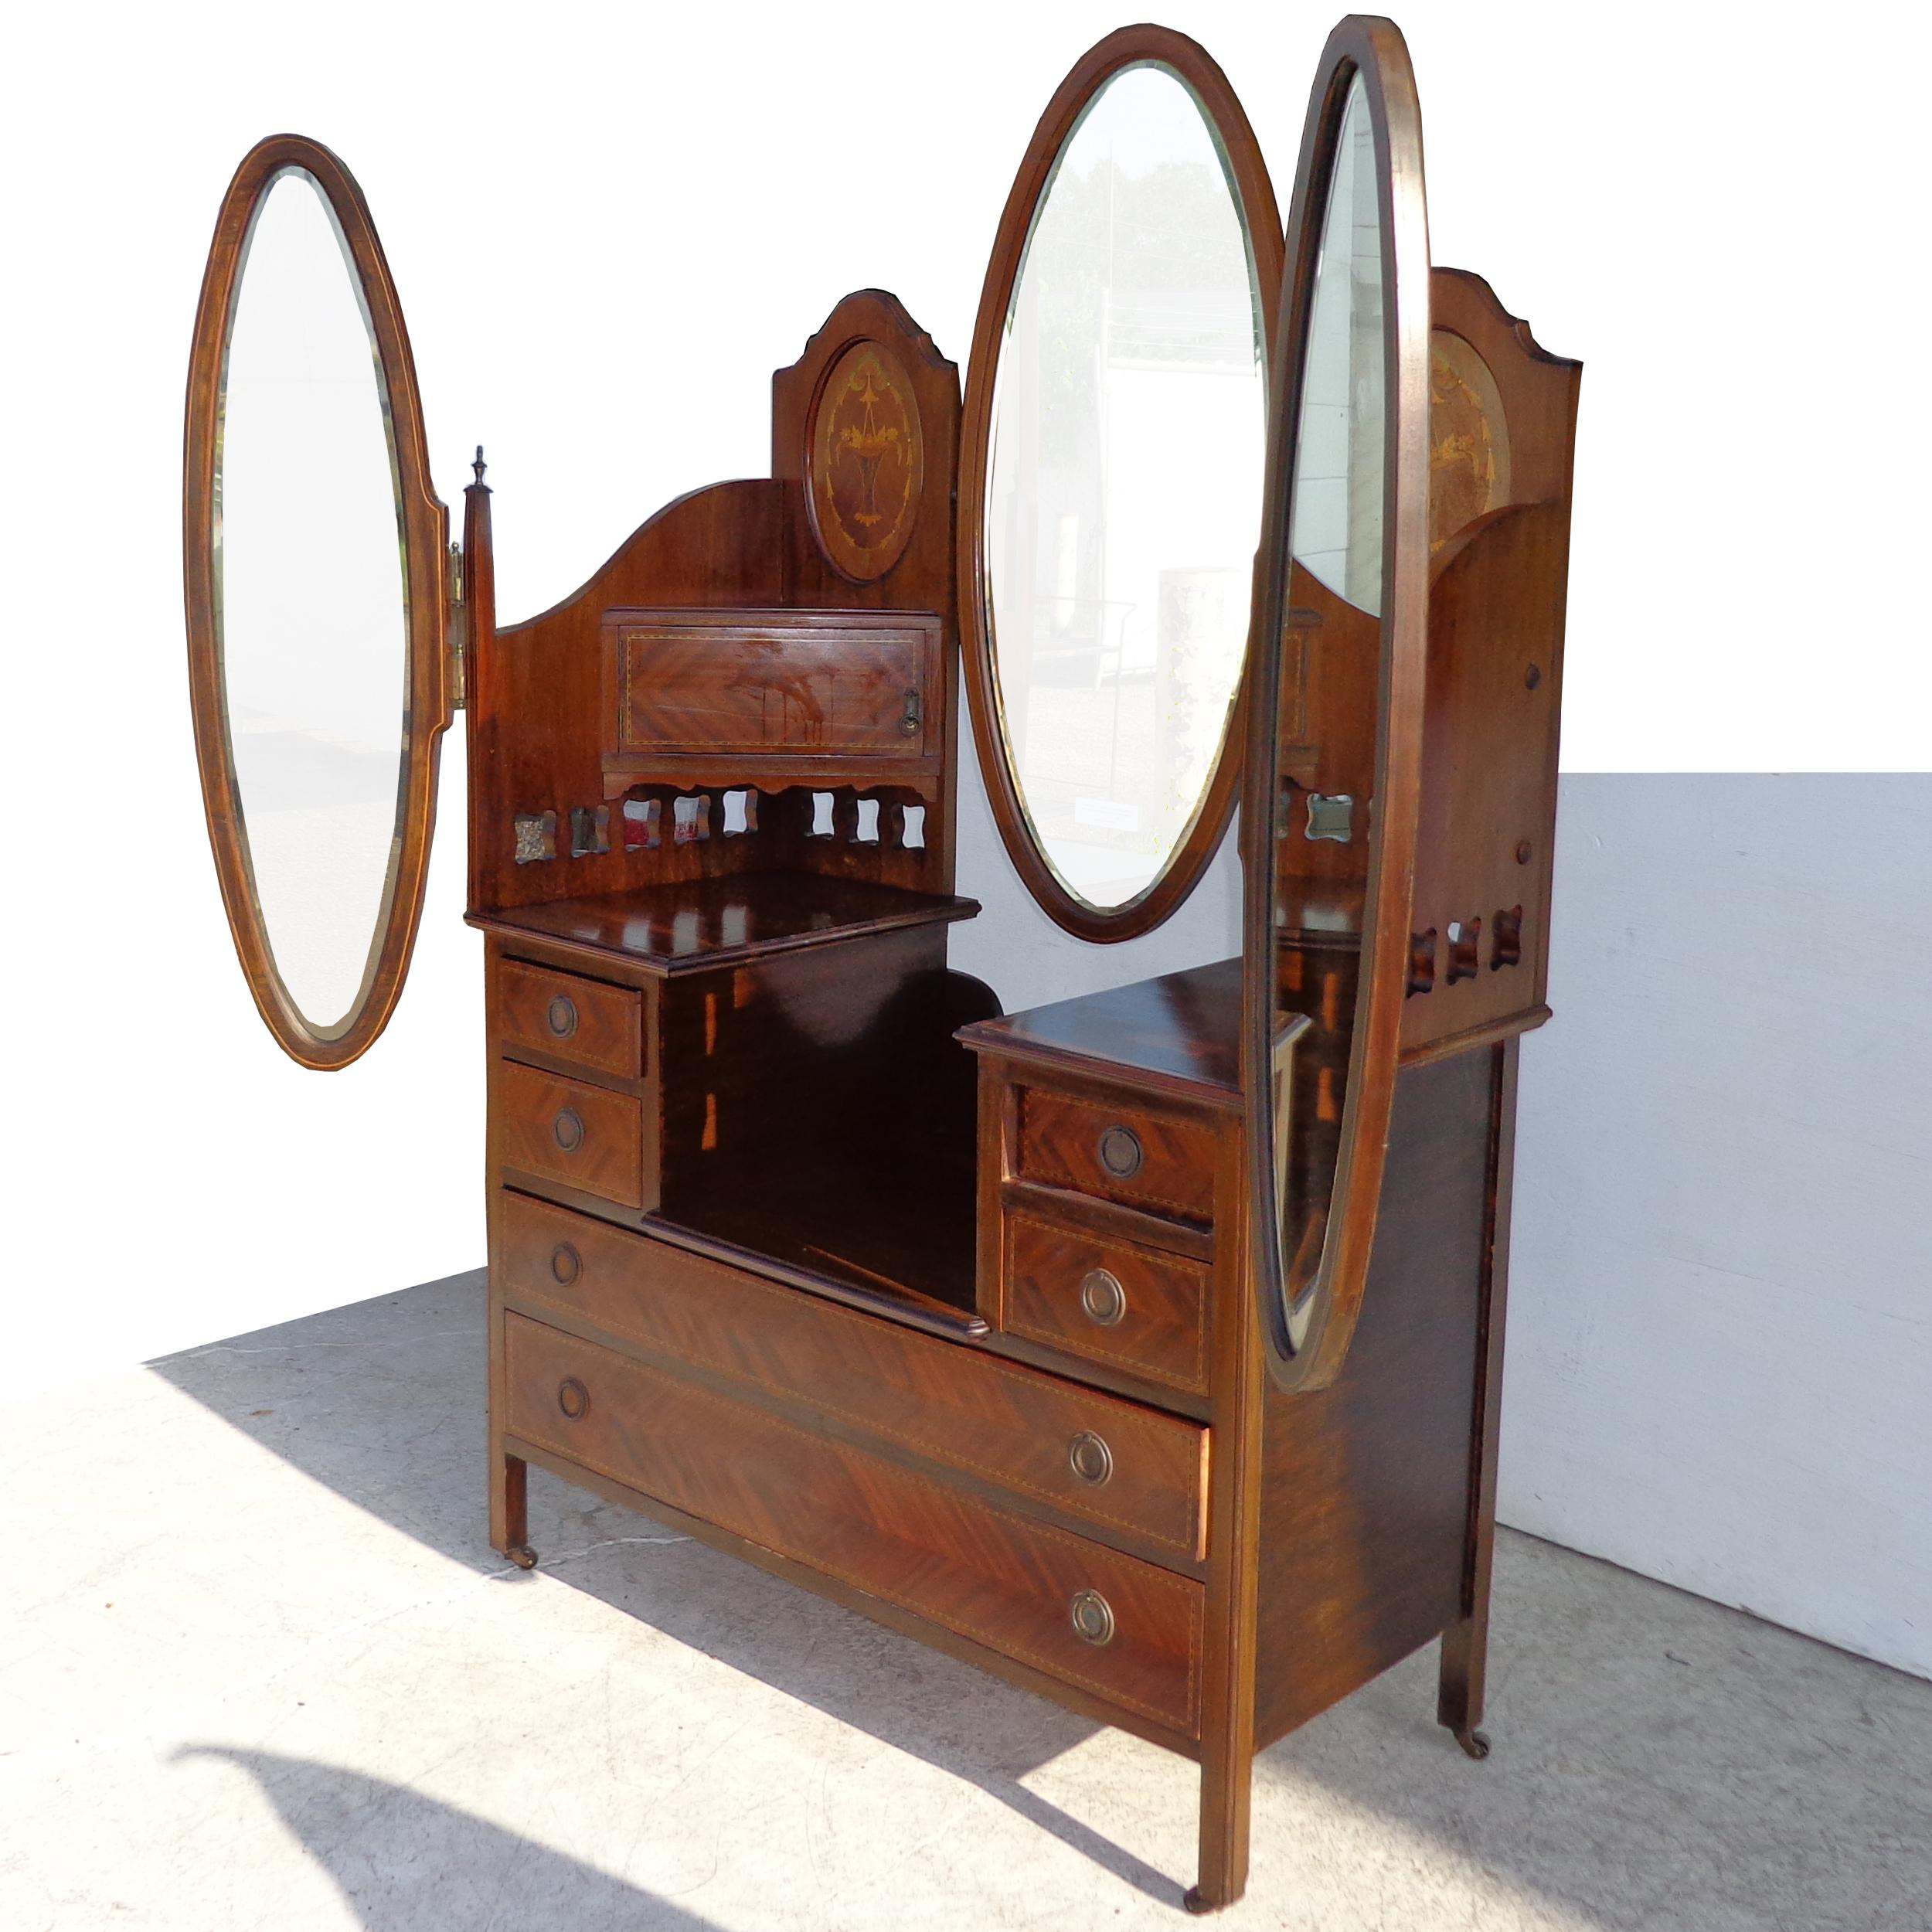 Mahagoni-Dreifachspiegel-Waschtisch mit verstellbaren Spiegeln
1900s

Dieser atemberaubende Waschtisch hat eine erhöhte Rückenlehne mit ovalen Paneelen aus Wurzelholz und Parkett. Ein zentraler ovaler Spiegel, flankiert von 2 verstellbaren